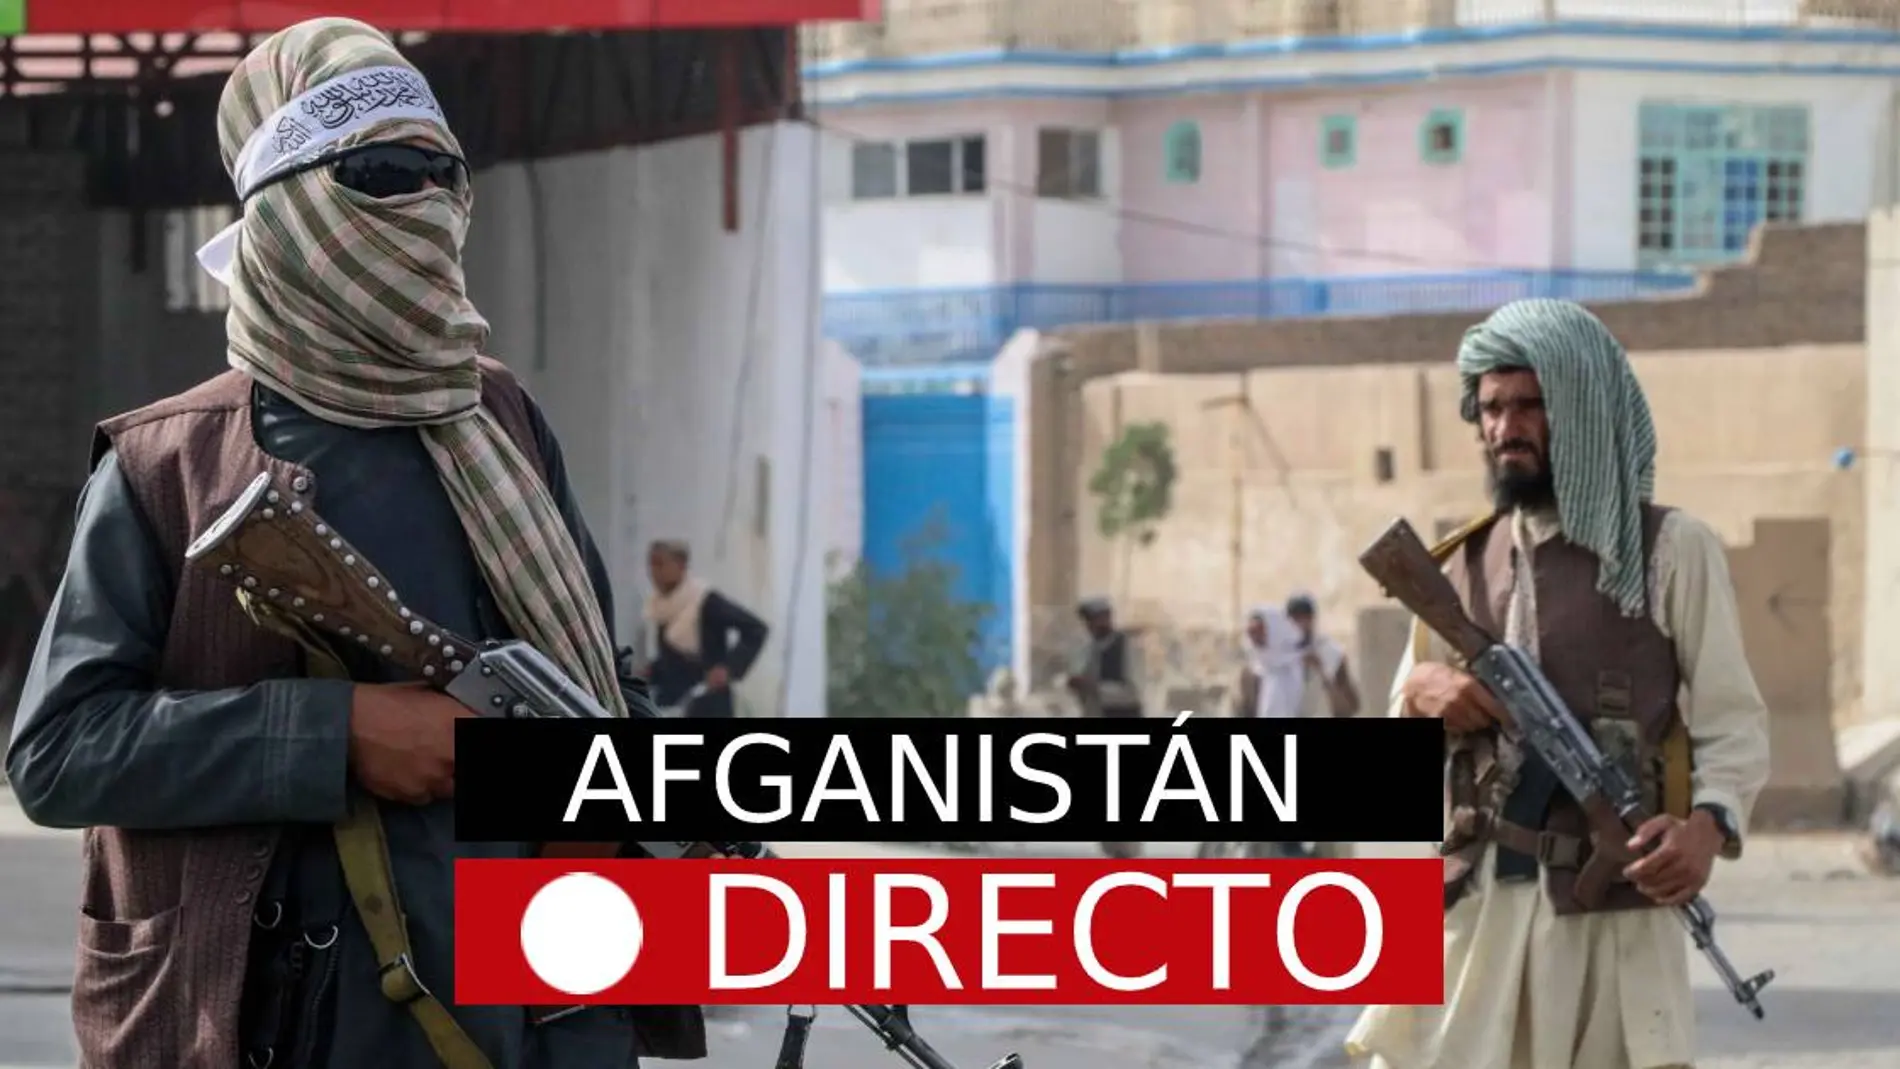 Últimas Noticias sobre Afganistán hoy: los talibanes prometen derechos a las mujeres y amnistía